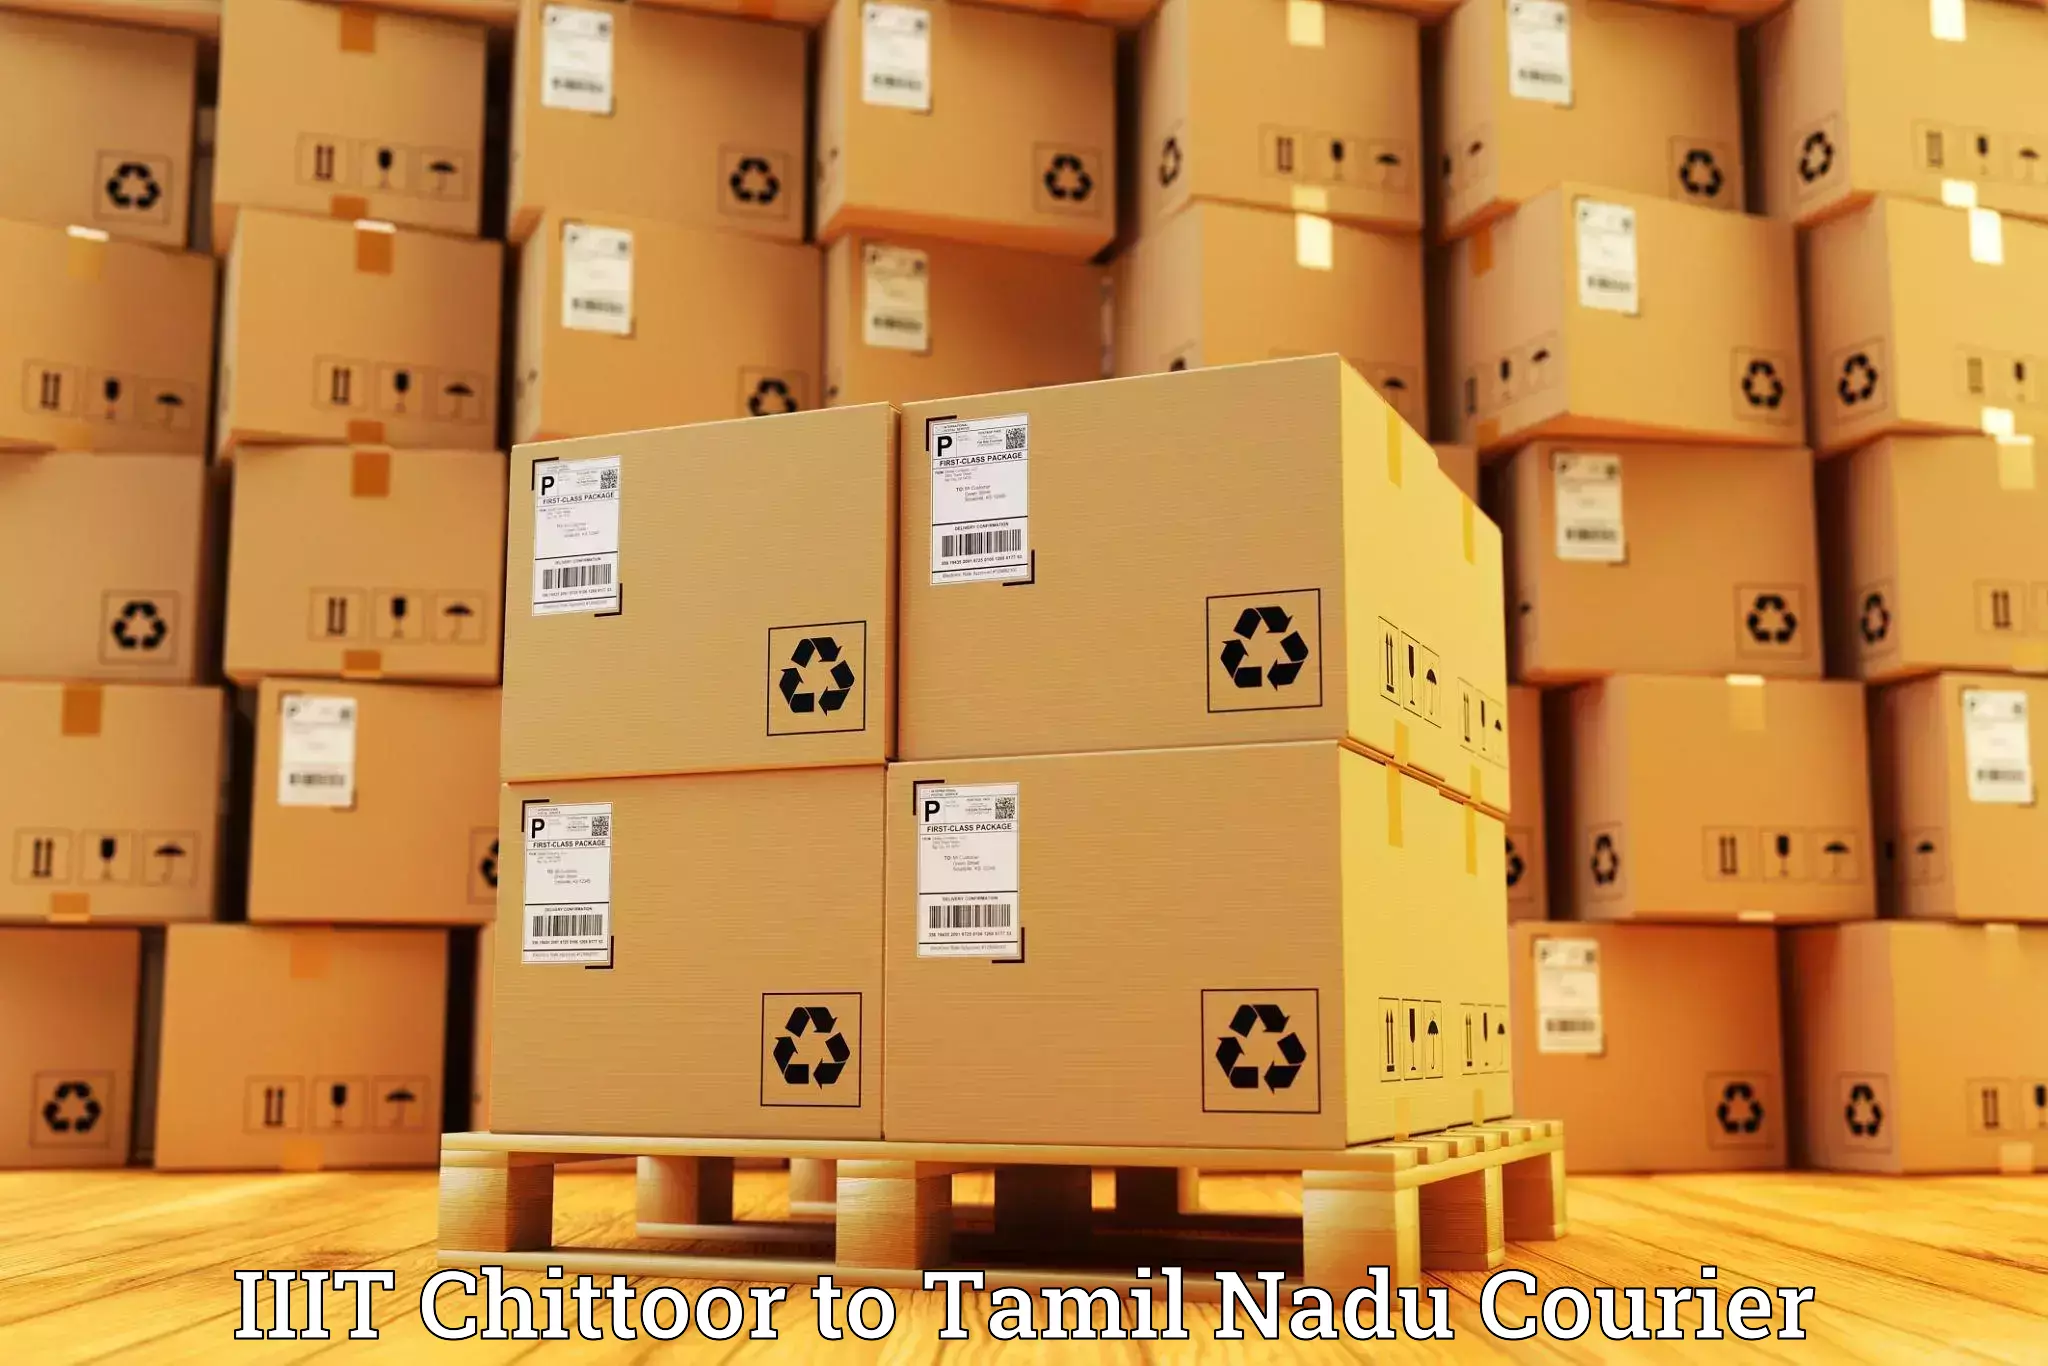 24/7 courier service IIIT Chittoor to Tamil Nadu